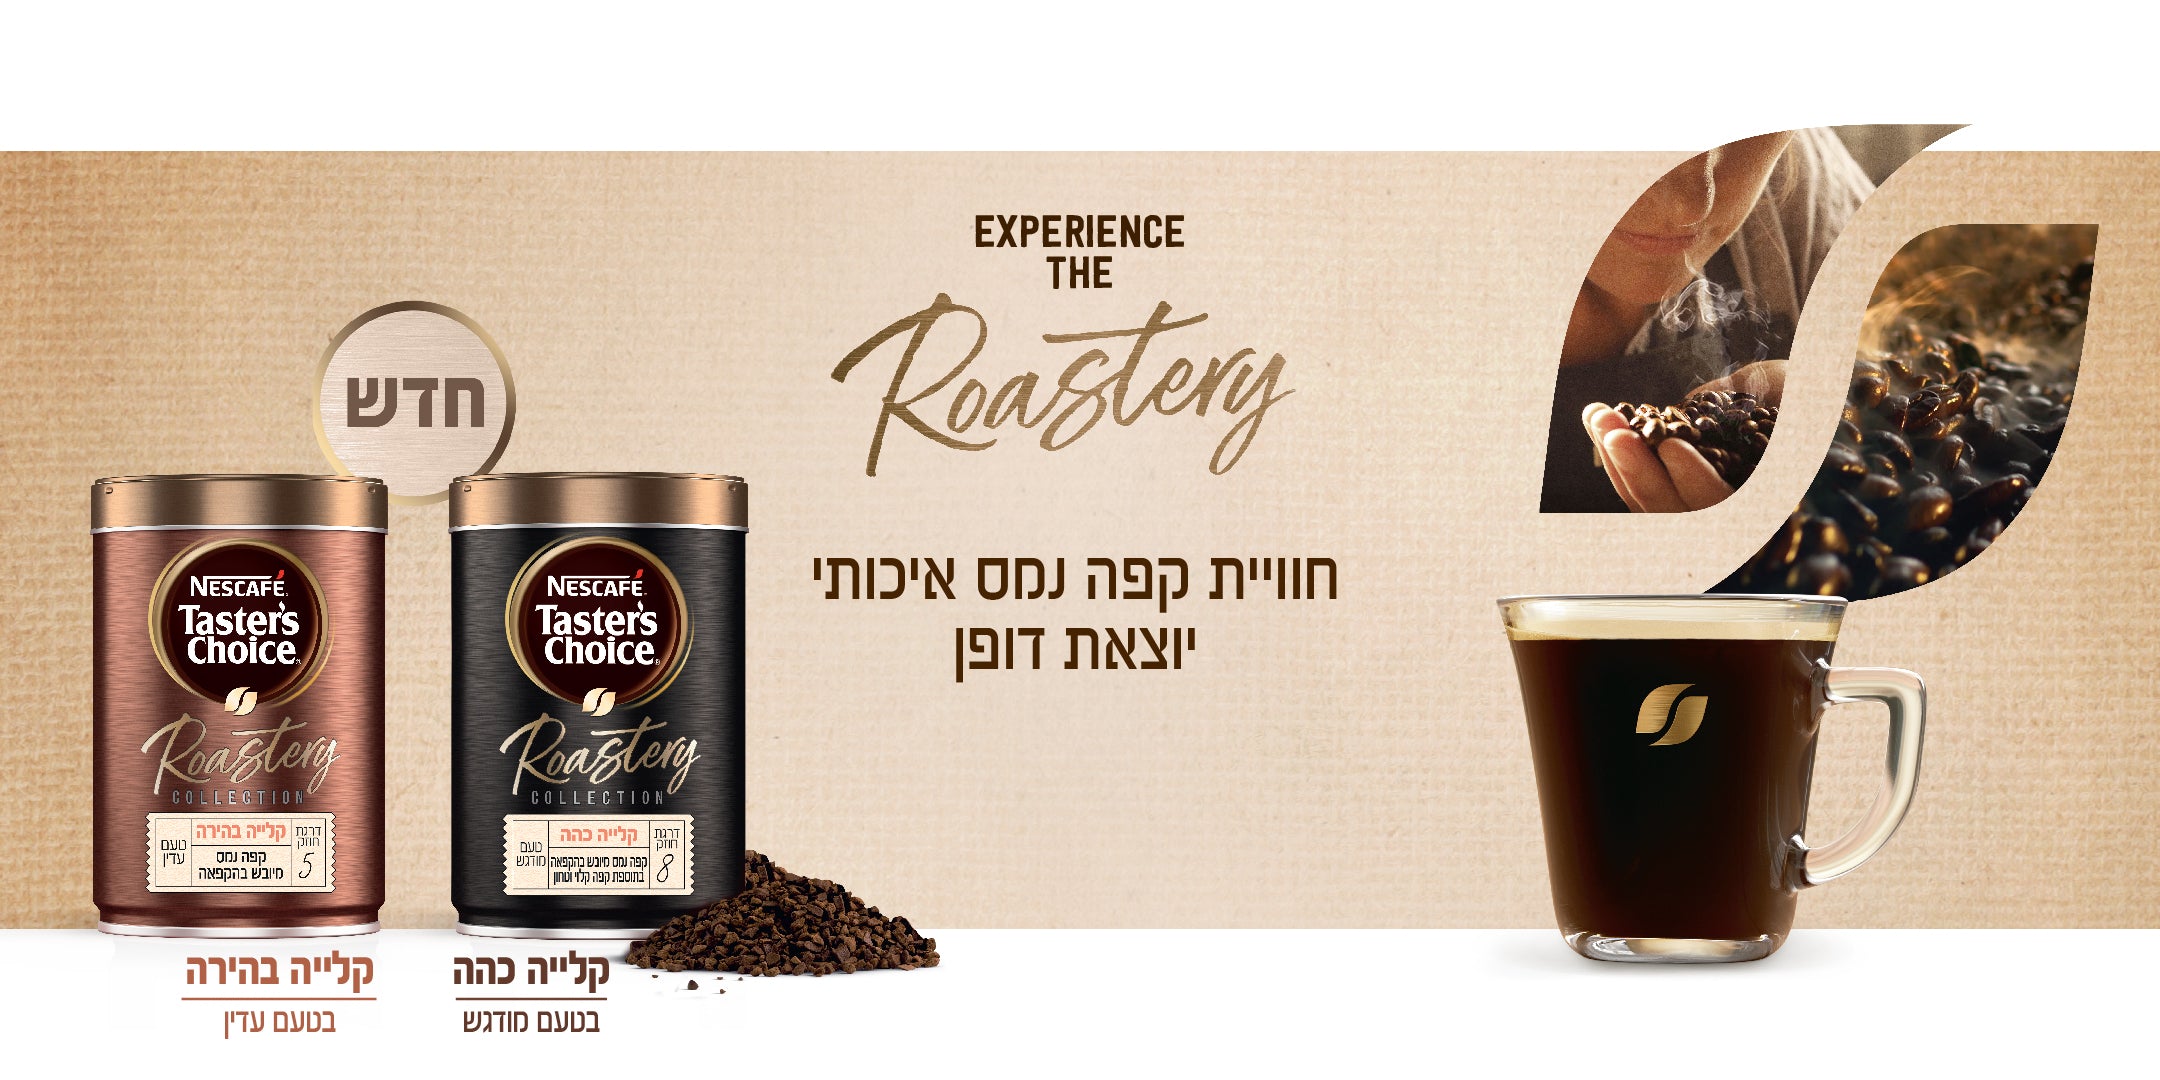 experience the roastery. חוויית קפה נמס איכותי יוצאת דופן. חדש - קלייה כהה בטעם מודגש וקלייה בהירה בטעם עדין.